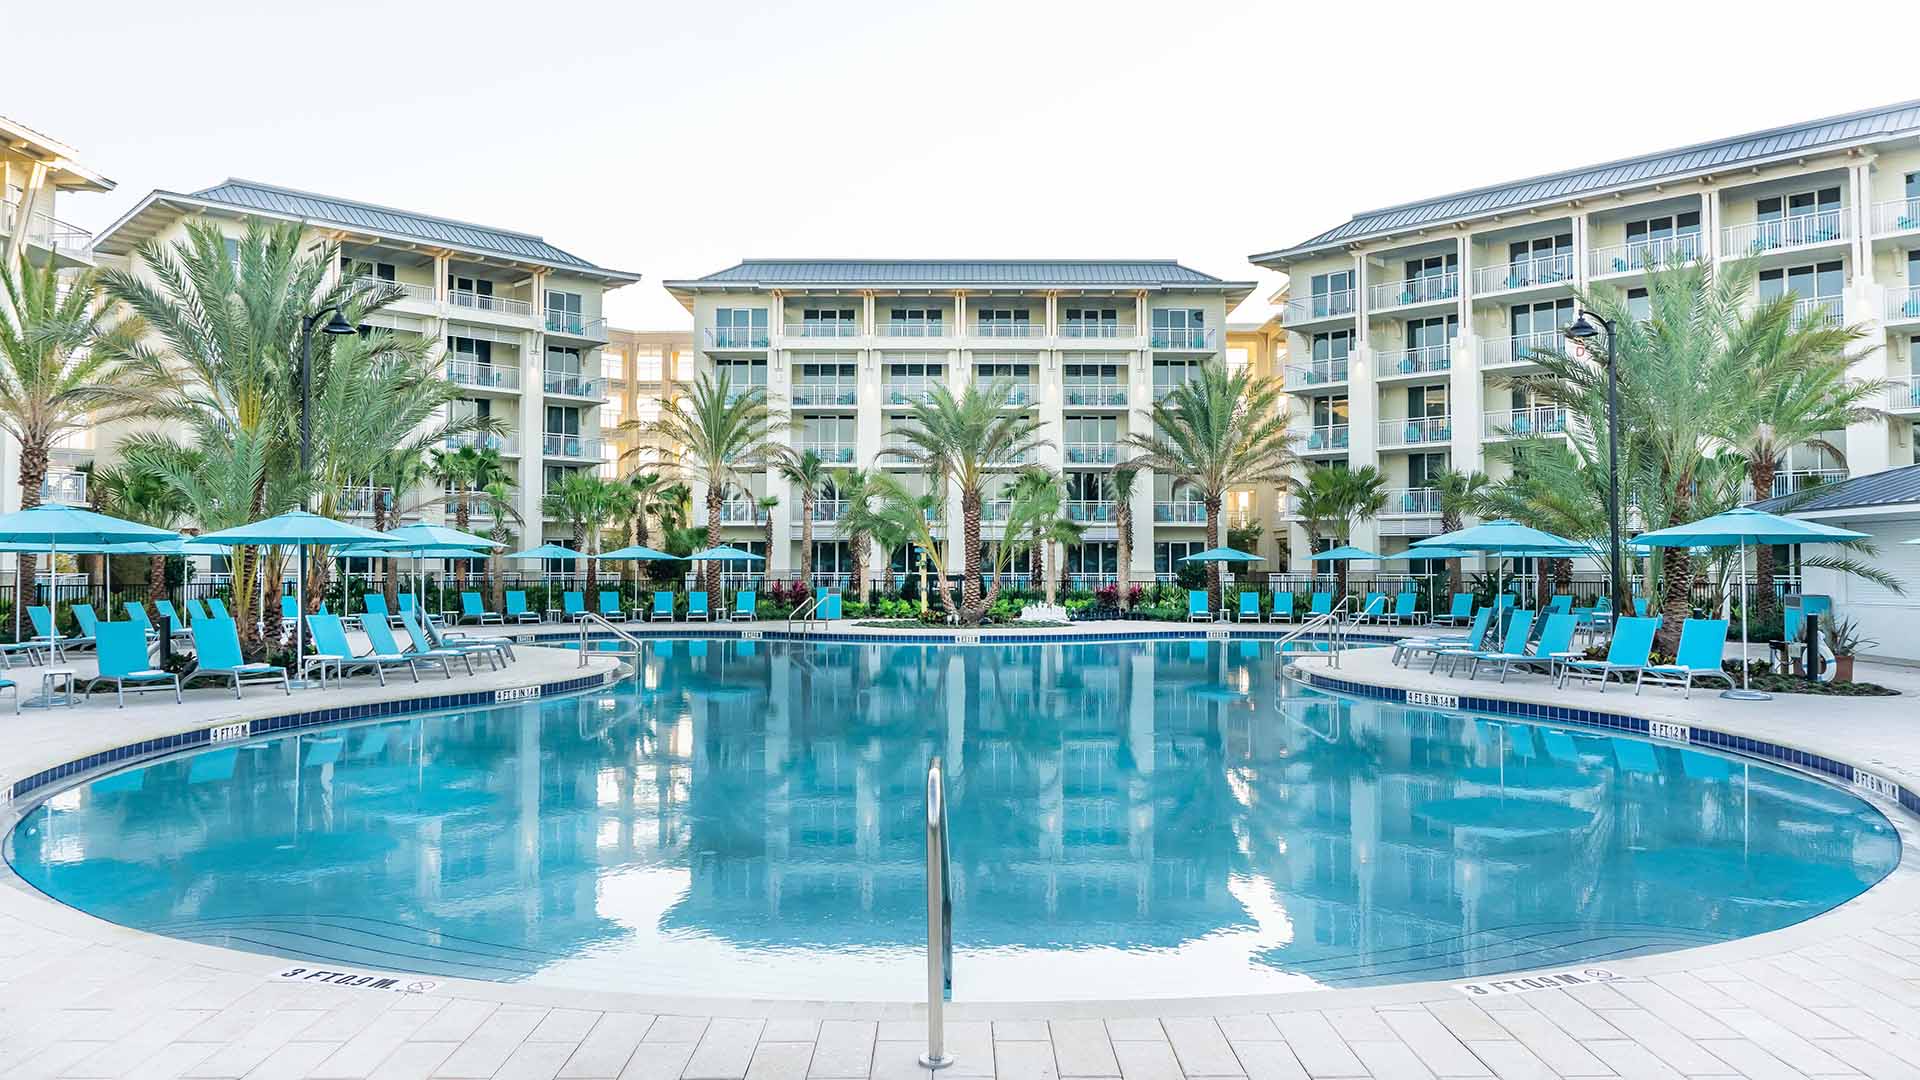 Chill pool at Margaritaville Resort Orlando